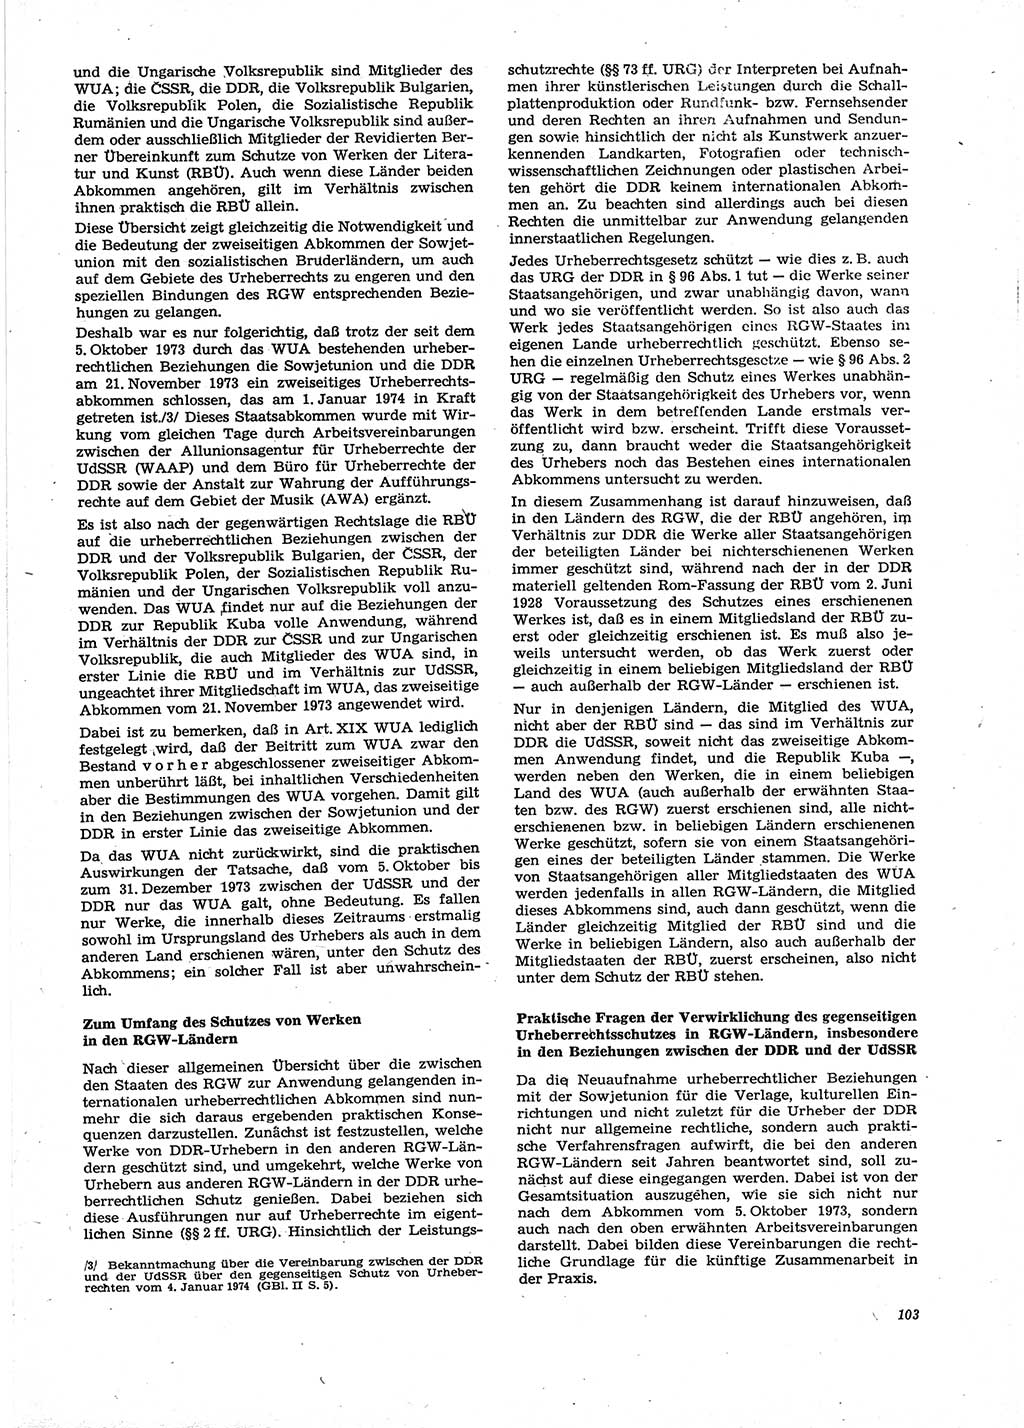 Neue Justiz (NJ), Zeitschrift für Recht und Rechtswissenschaft [Deutsche Demokratische Republik (DDR)], 29. Jahrgang 1975, Seite 103 (NJ DDR 1975, S. 103)